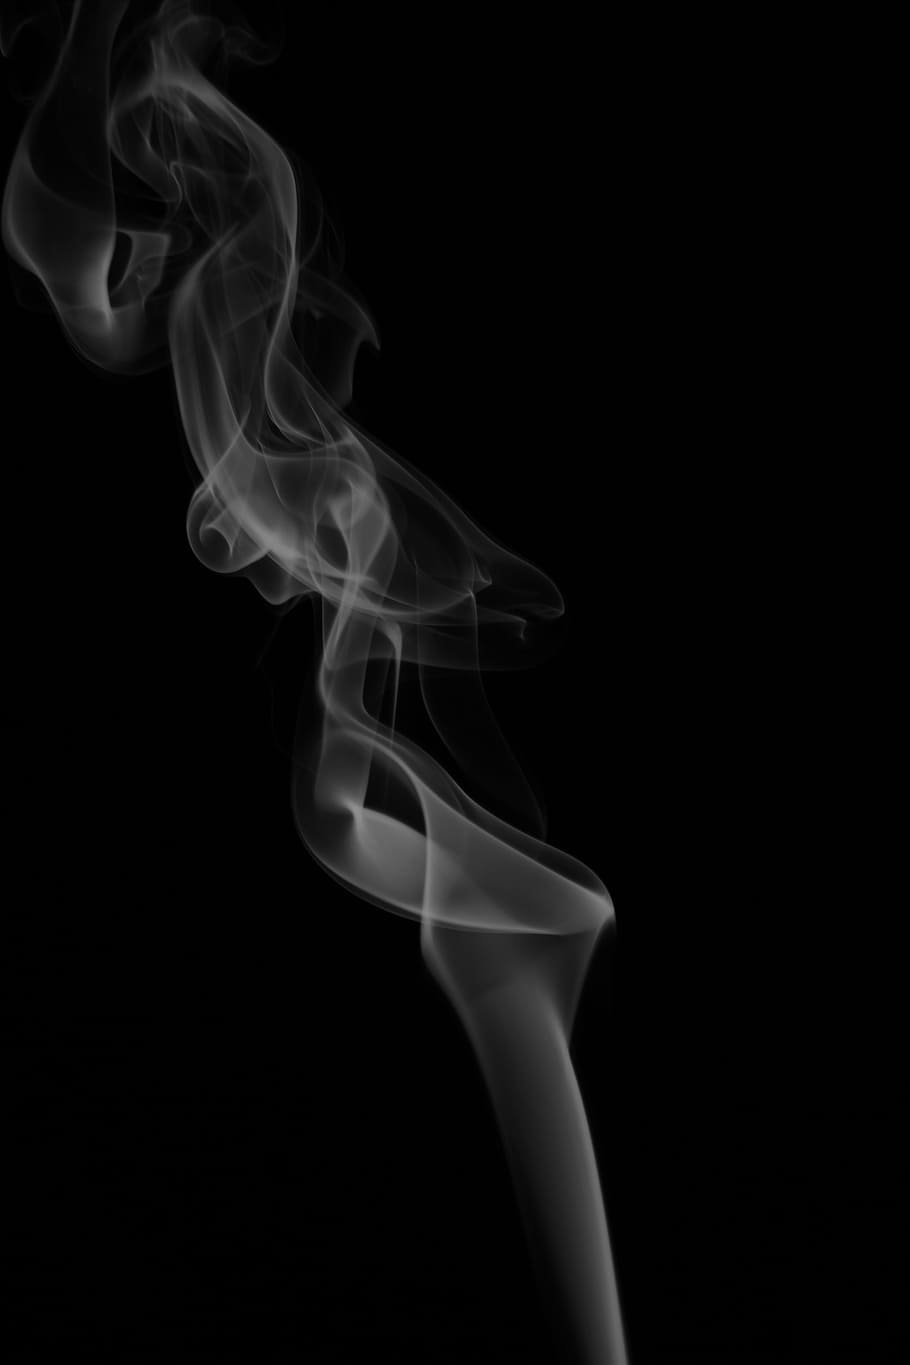 humo blanco, humo, fotografía, fotografía de humo, humo - Estructura física, color negro, resumen, fondos, curva, remolino